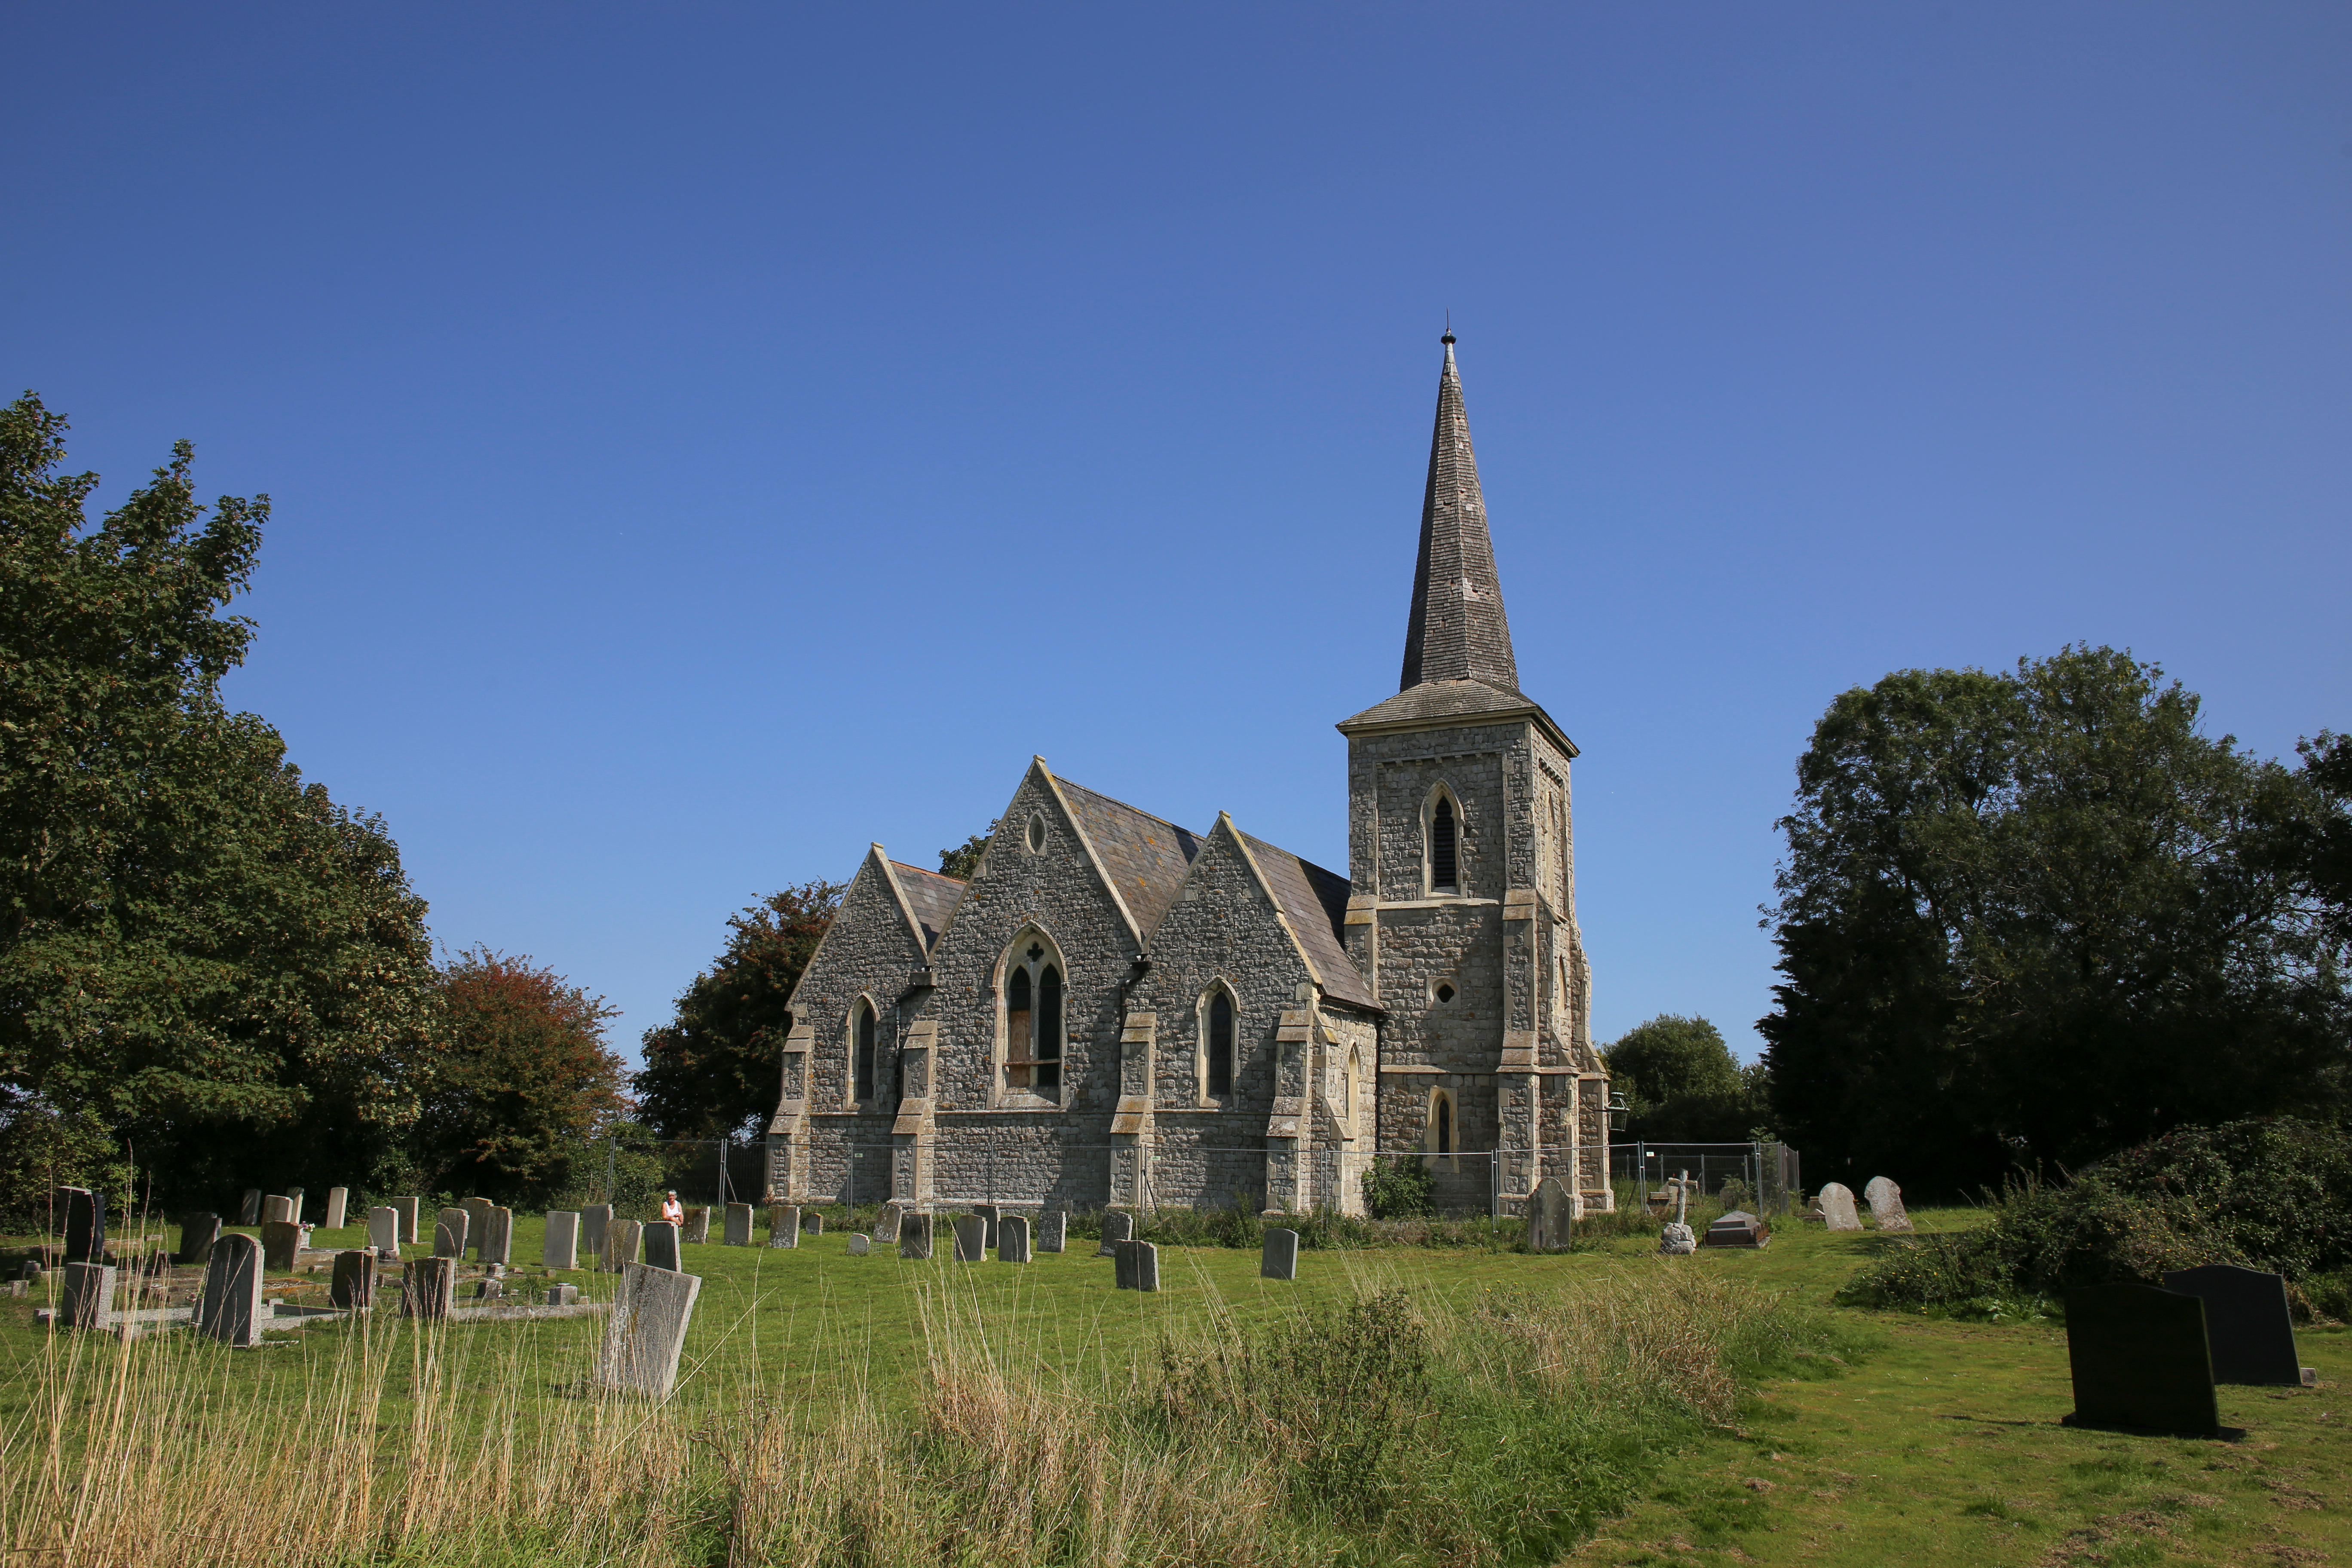 Besucher der Insel können das Heritage Centre und die Kirche erkunden